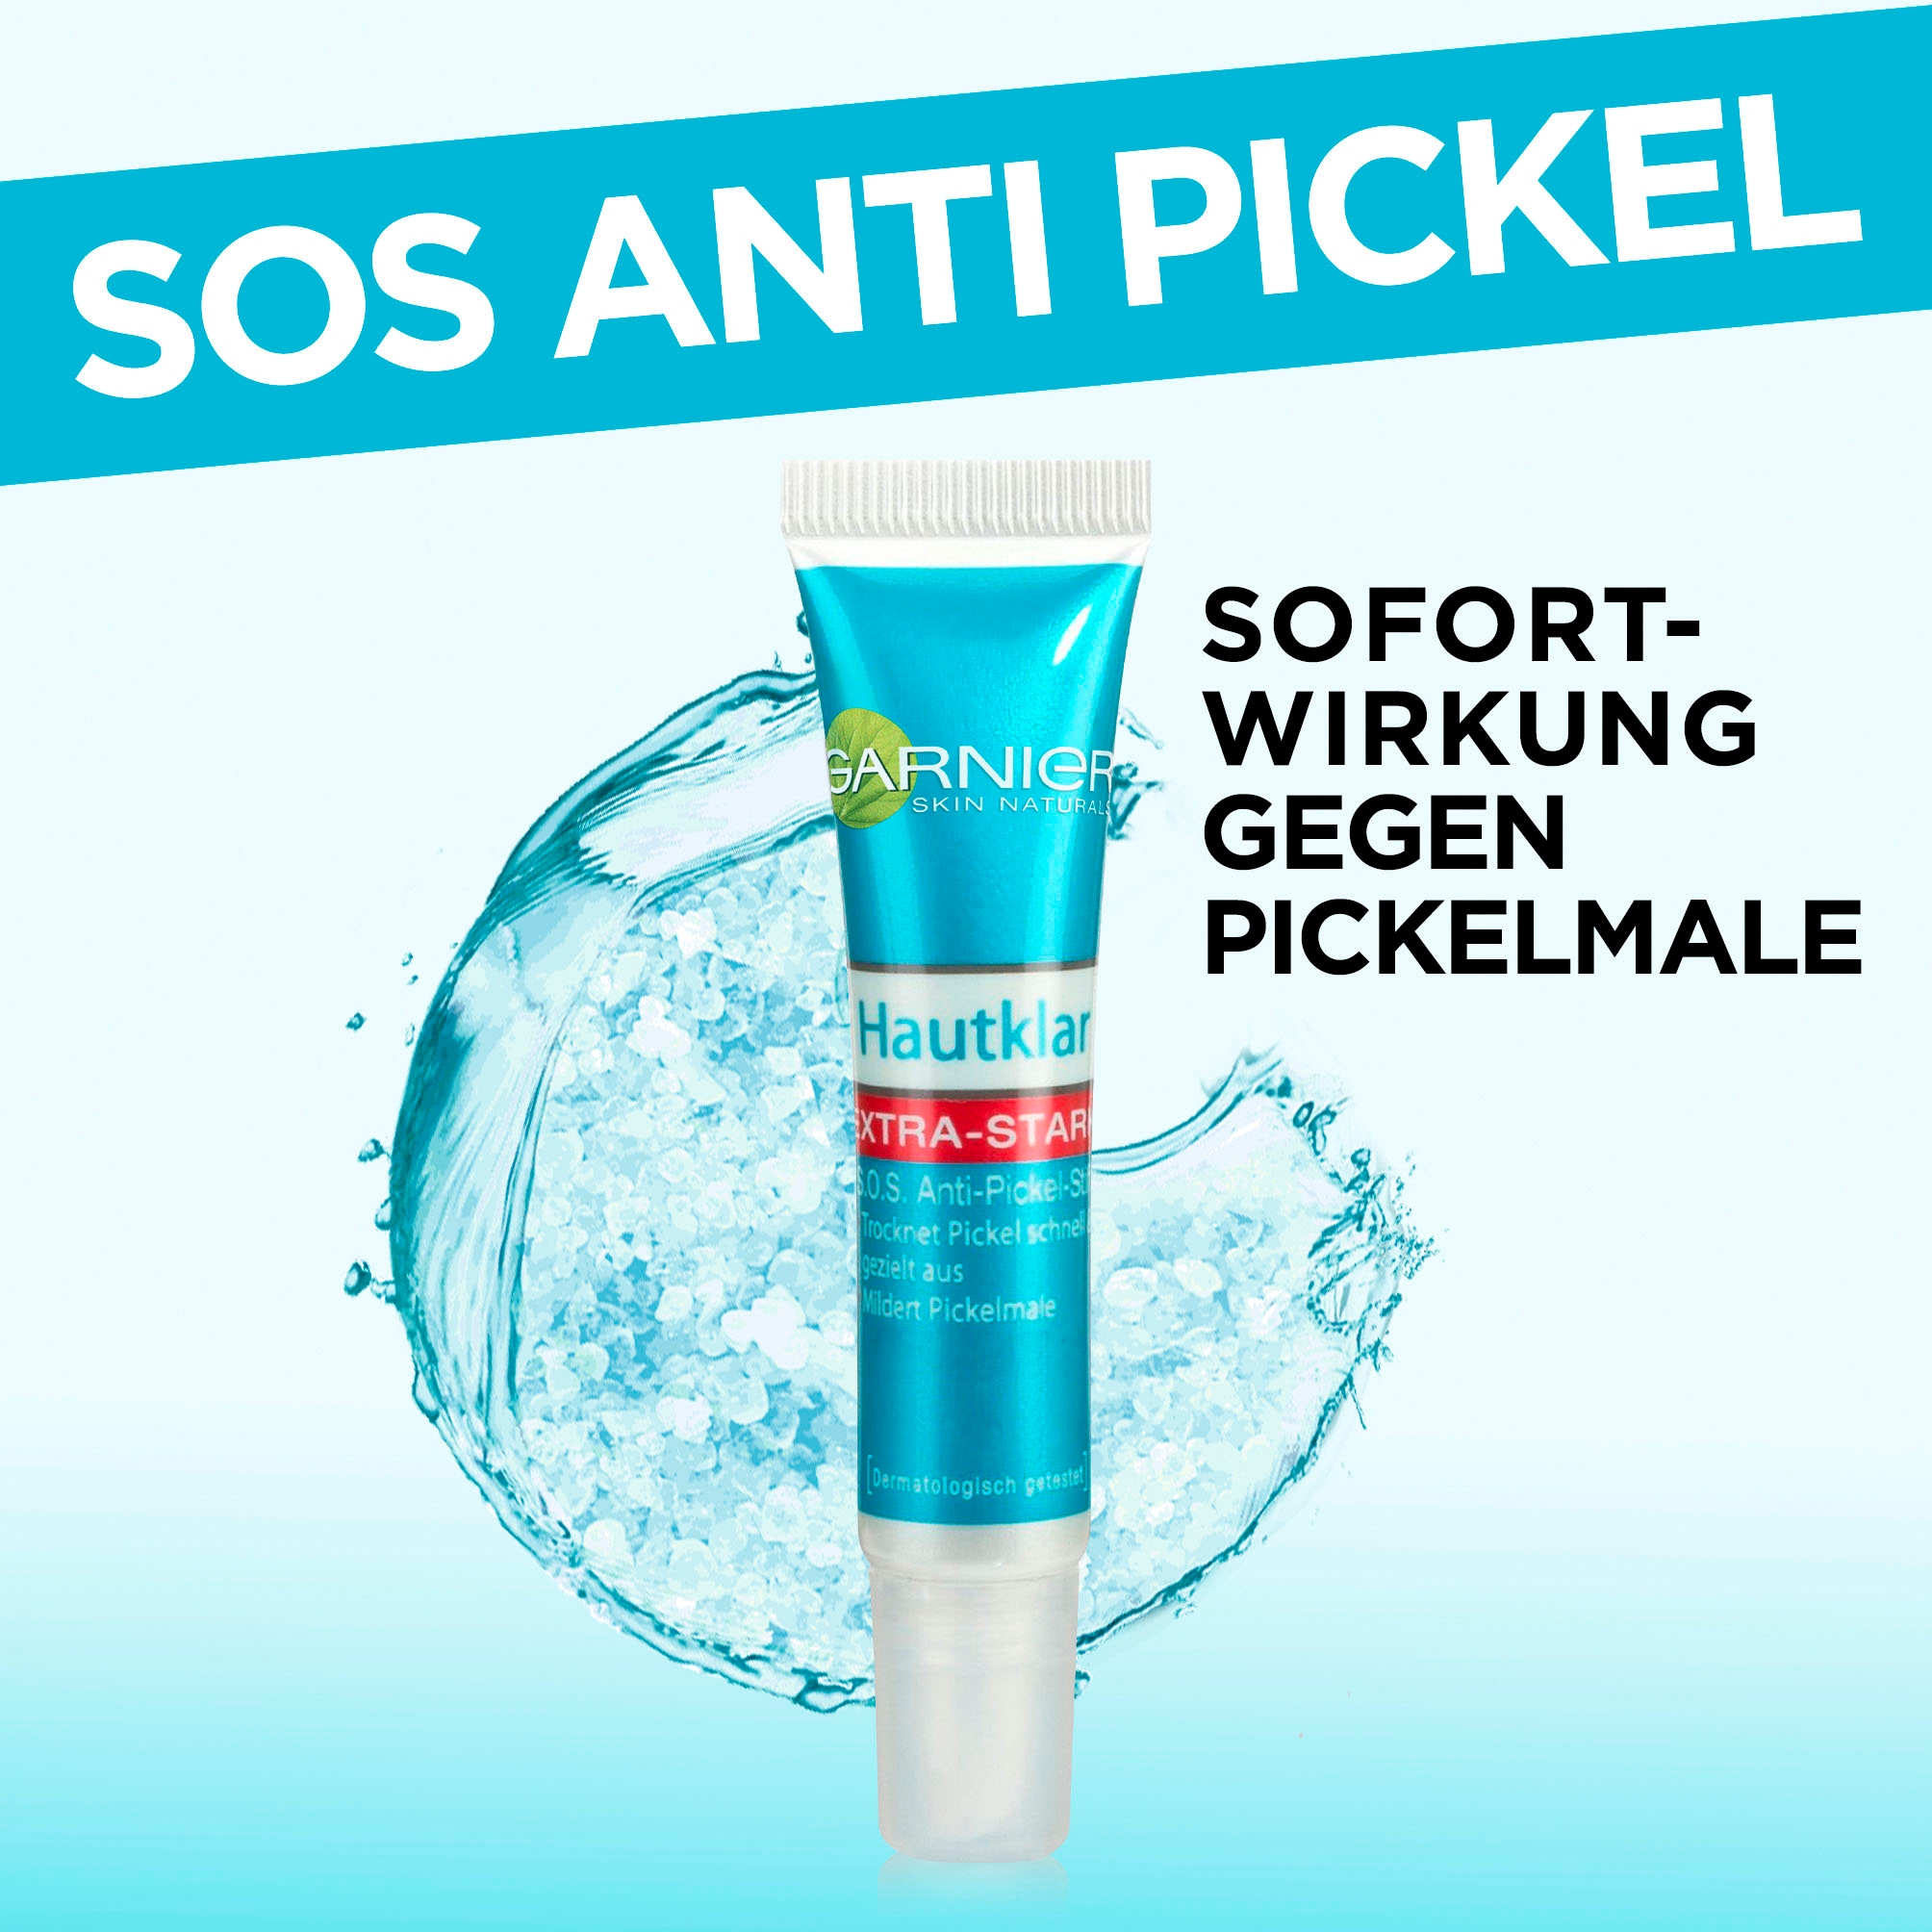 GARNIER Pflegestift »Hautklar SOS Anti-Pickel-Gel-Stift« bei ♕ | Gesichtswasser